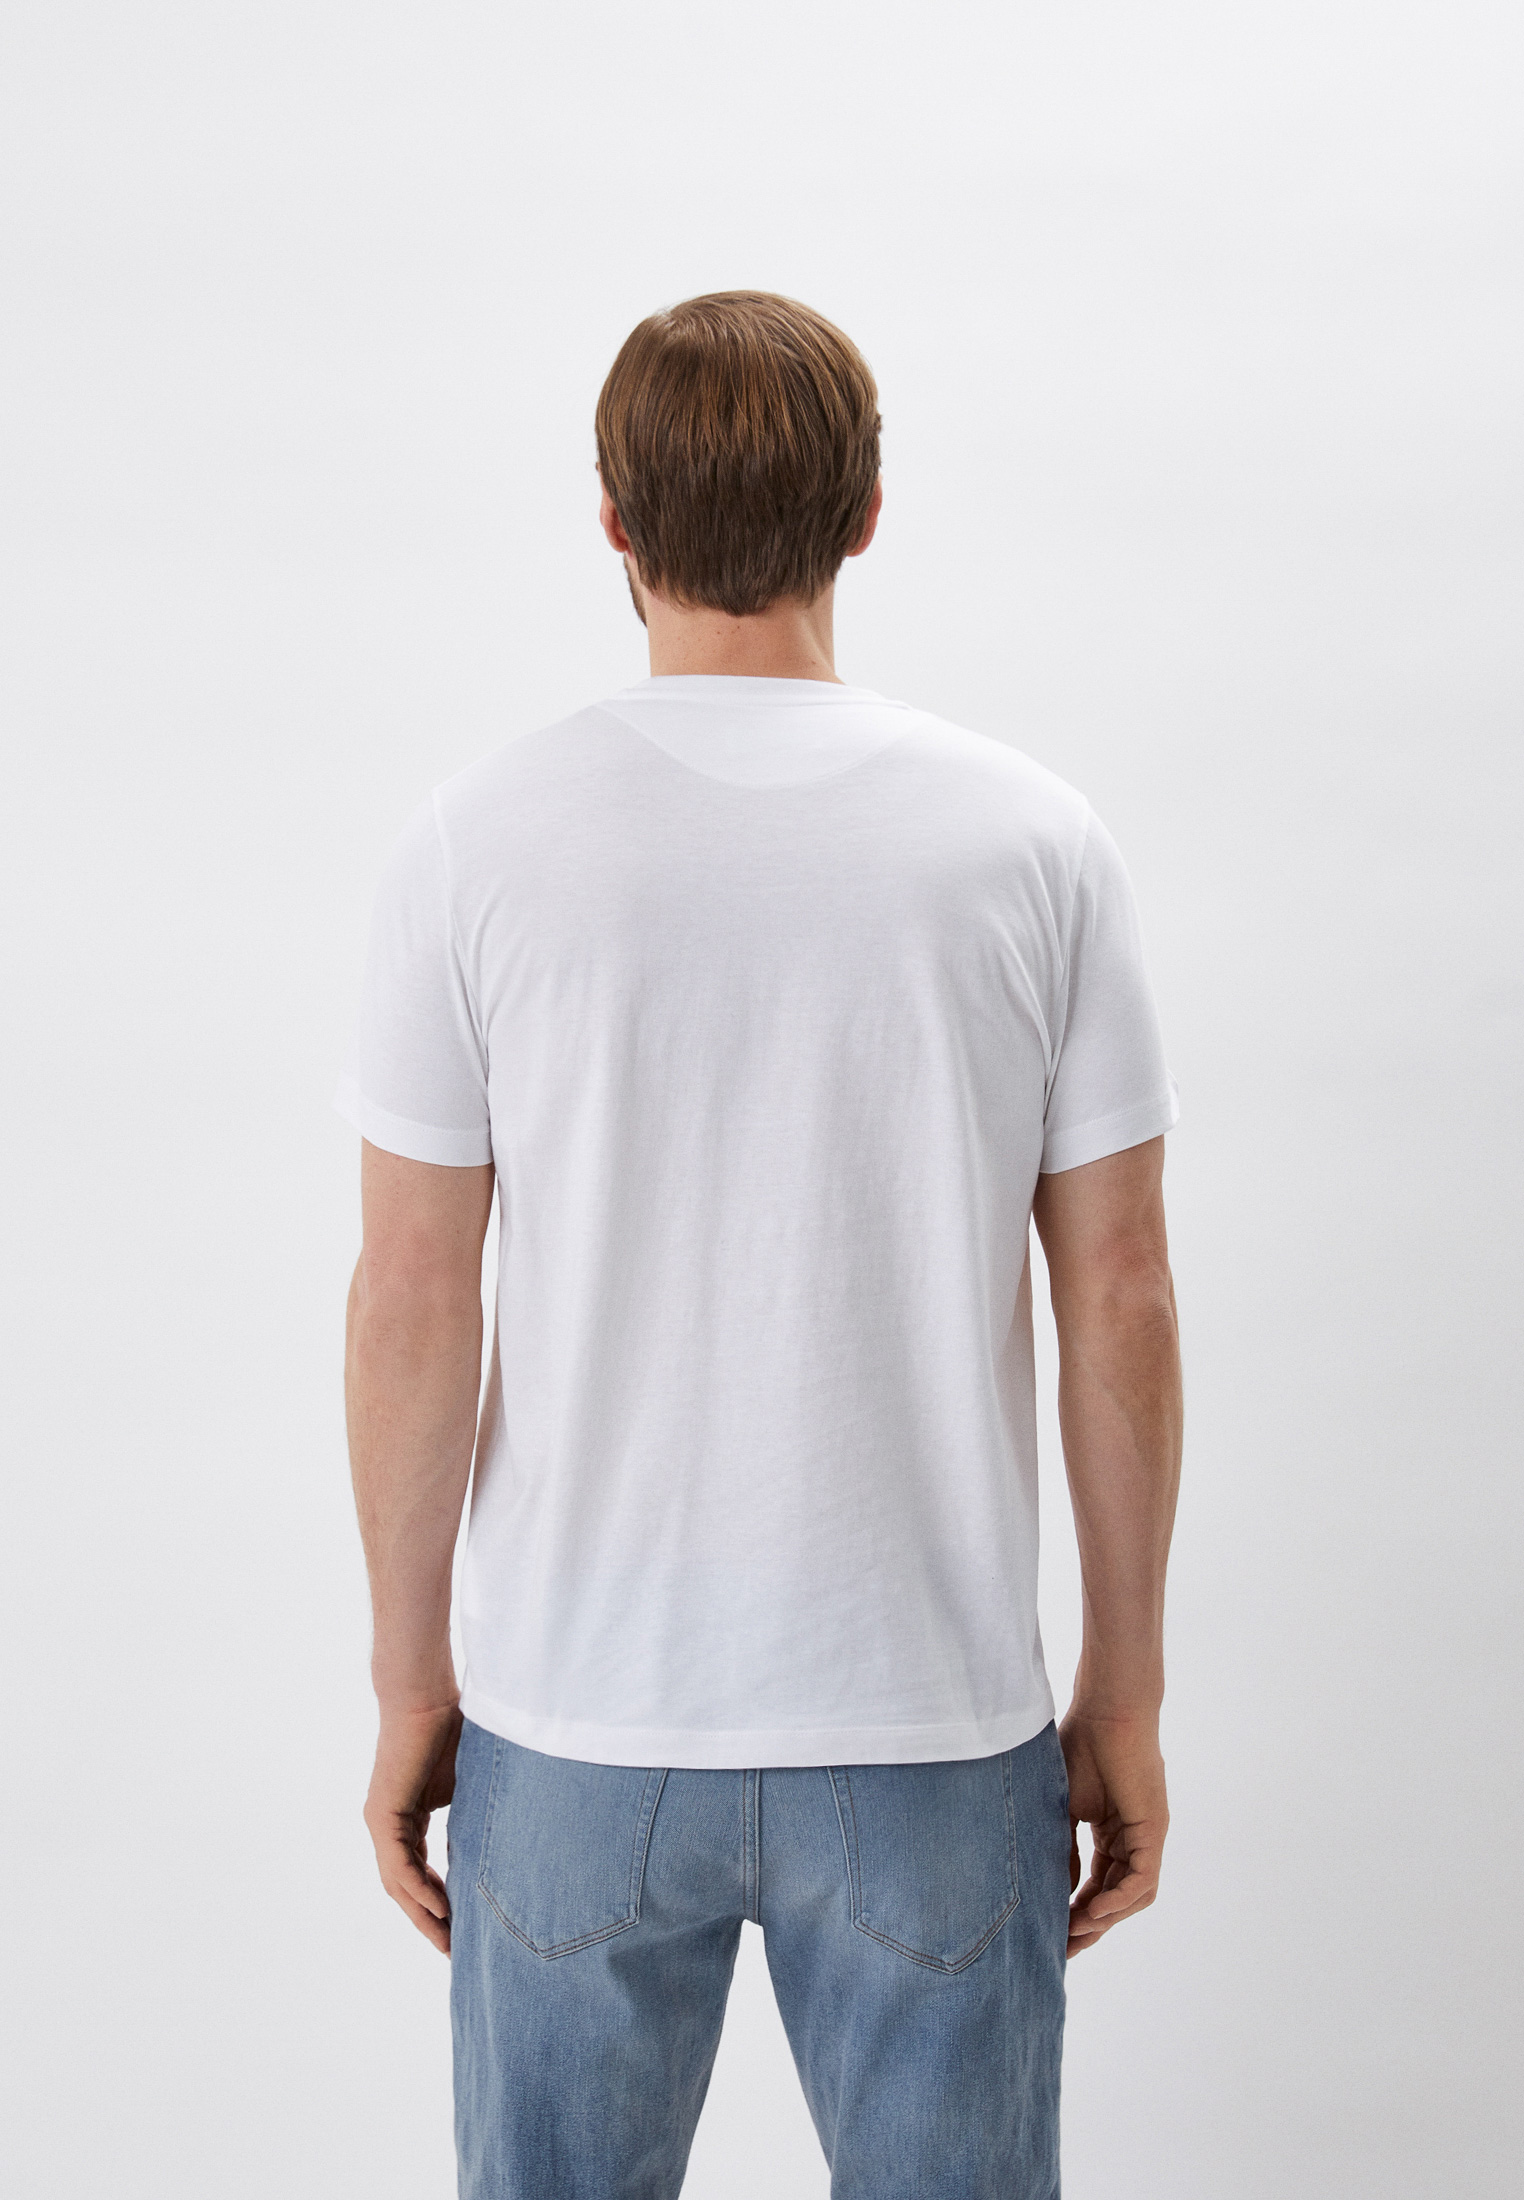 Мужская футболка Bikkembergs (Биккембергс) C 4 101 69 M 4349: изображение 3